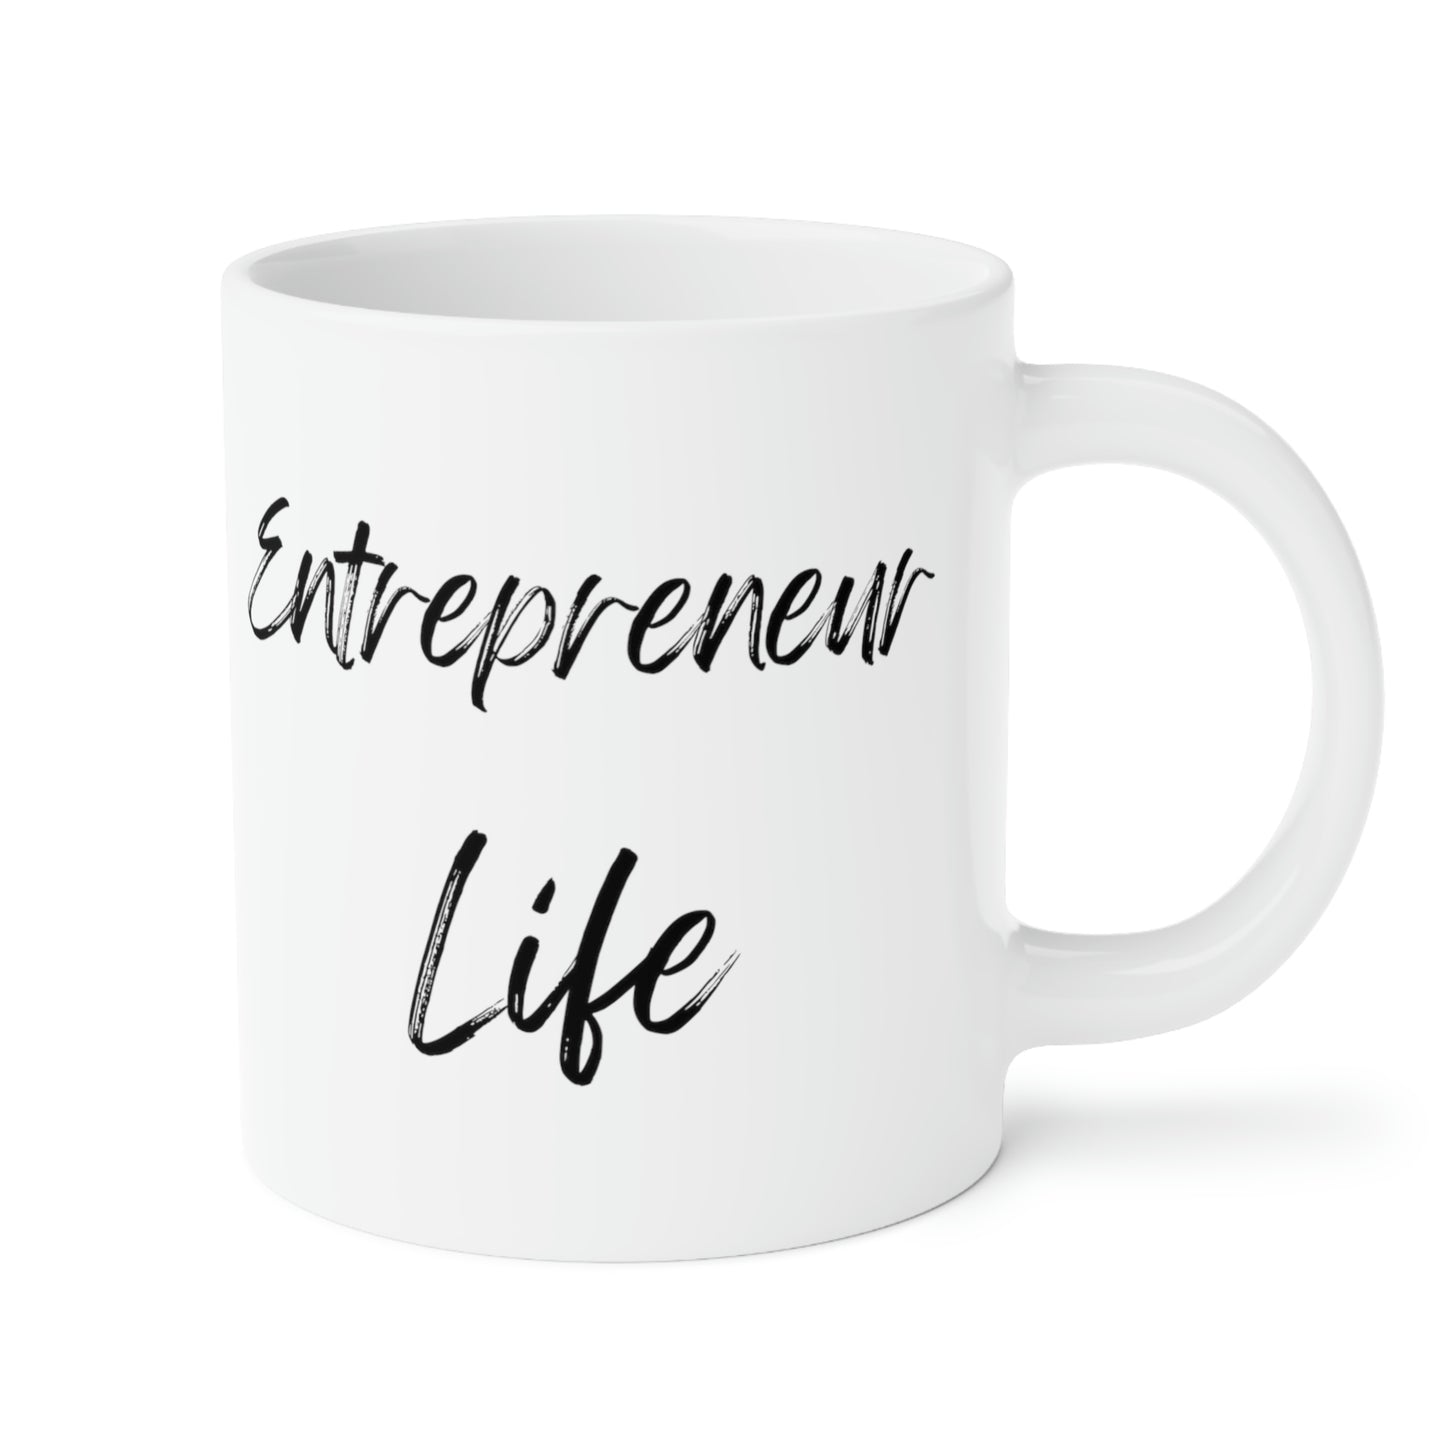 Entrepreneur Life Ceramic Mugs (11oz / 15oz / 20oz)